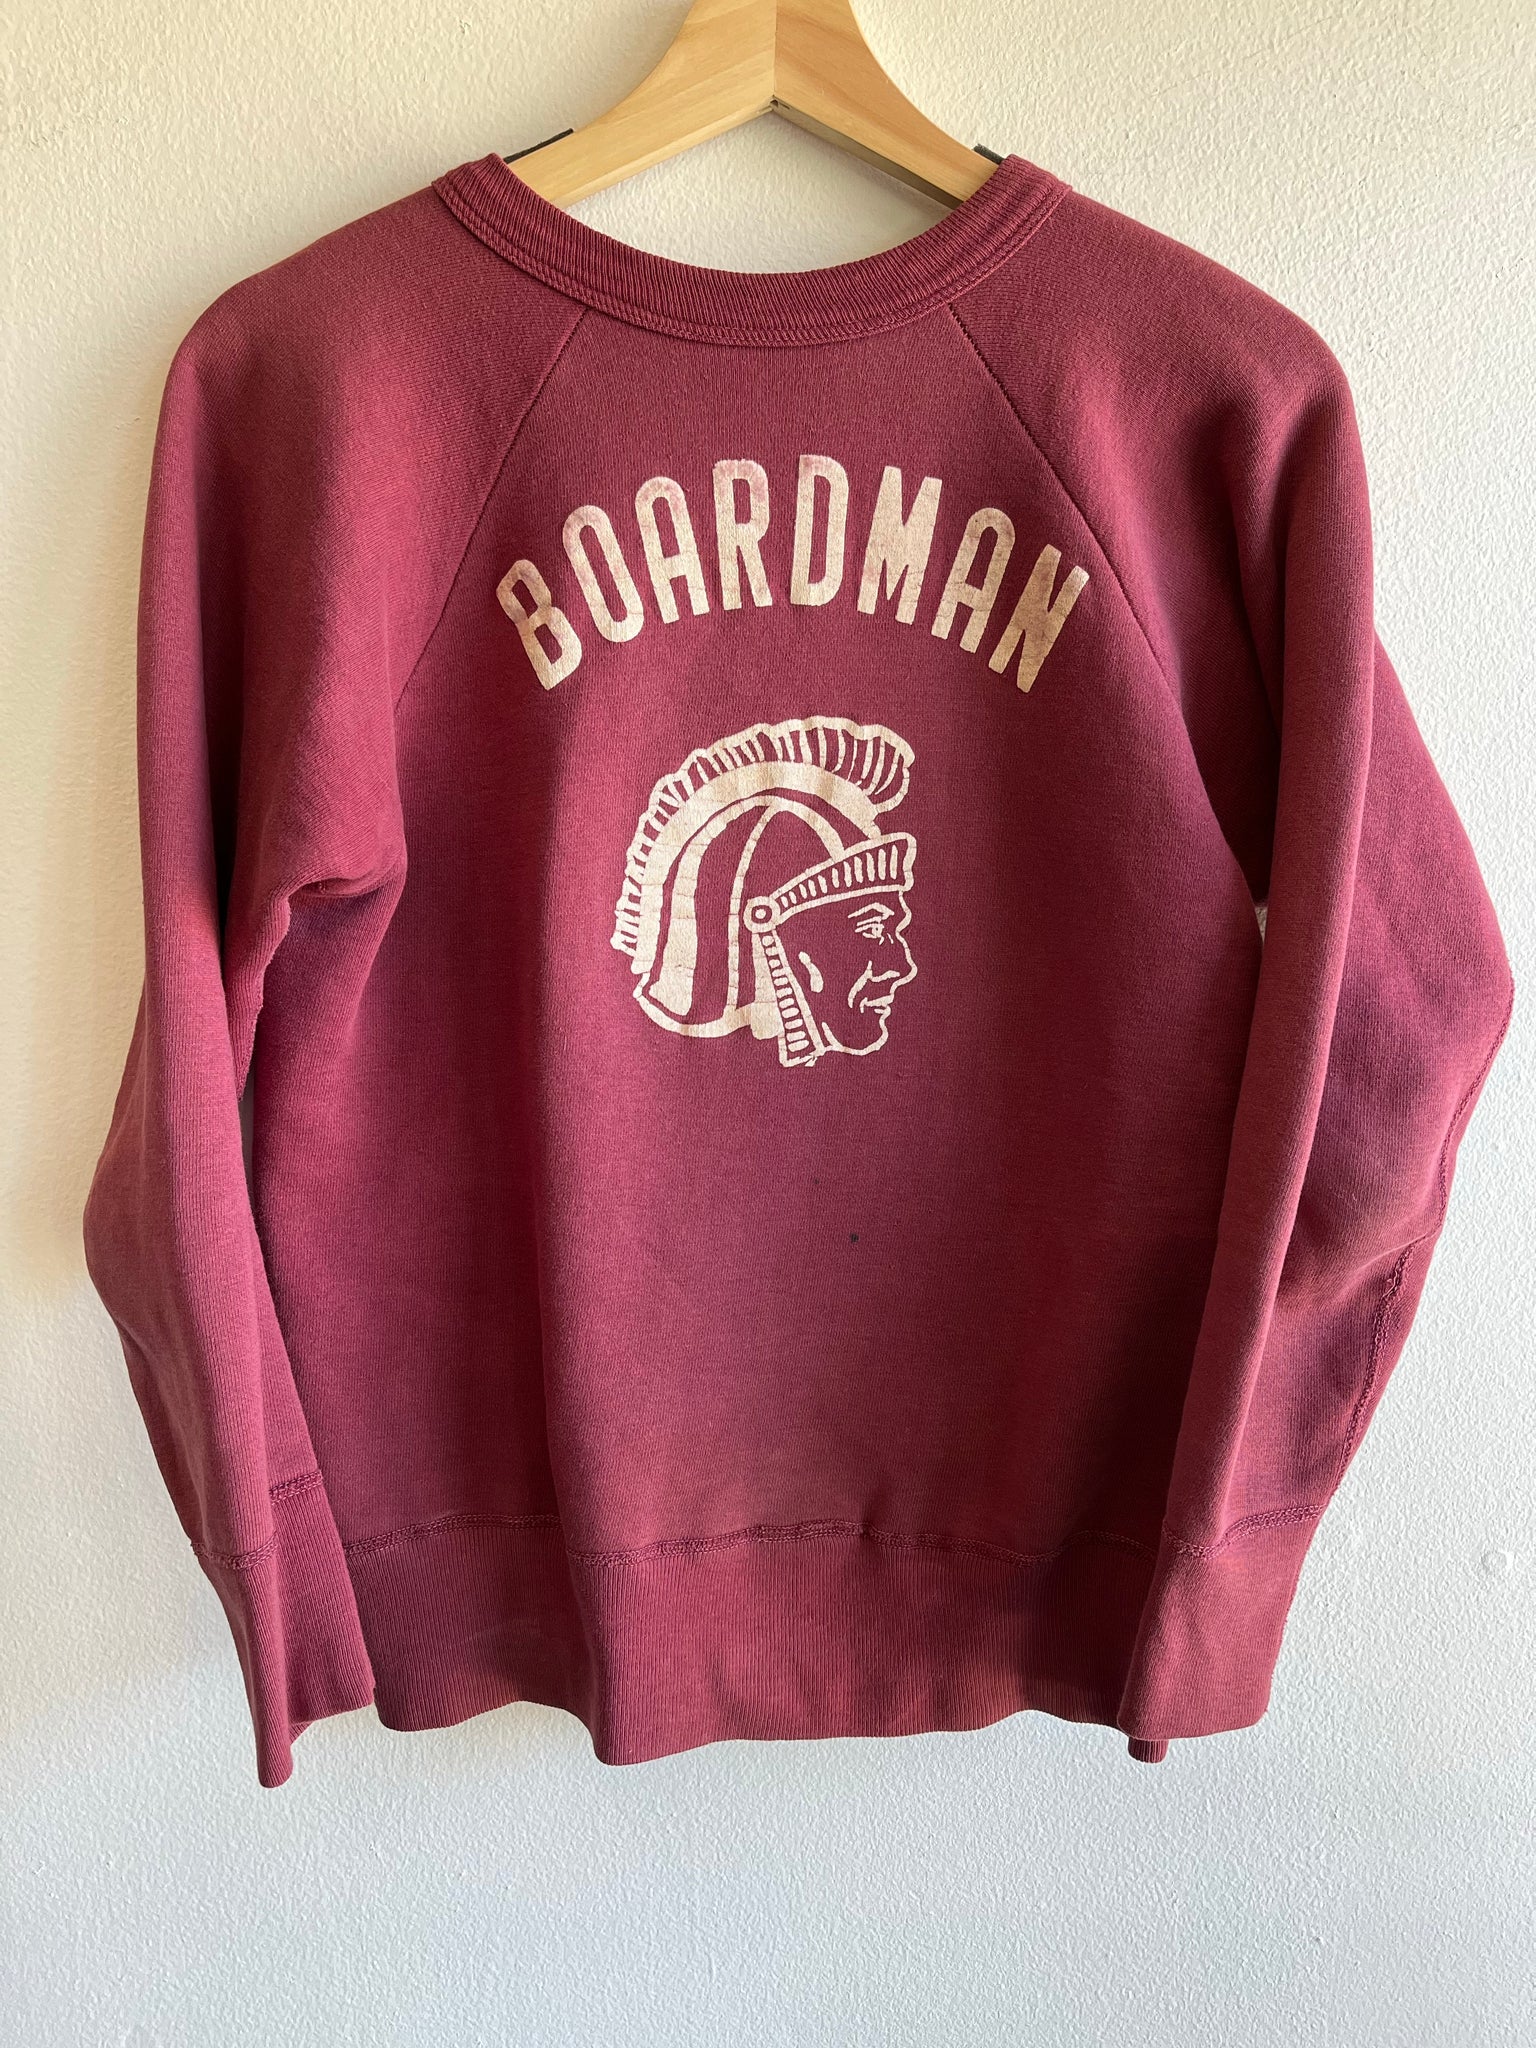 Vintage 1950’s “Boardman Trojans” Sweatshirt